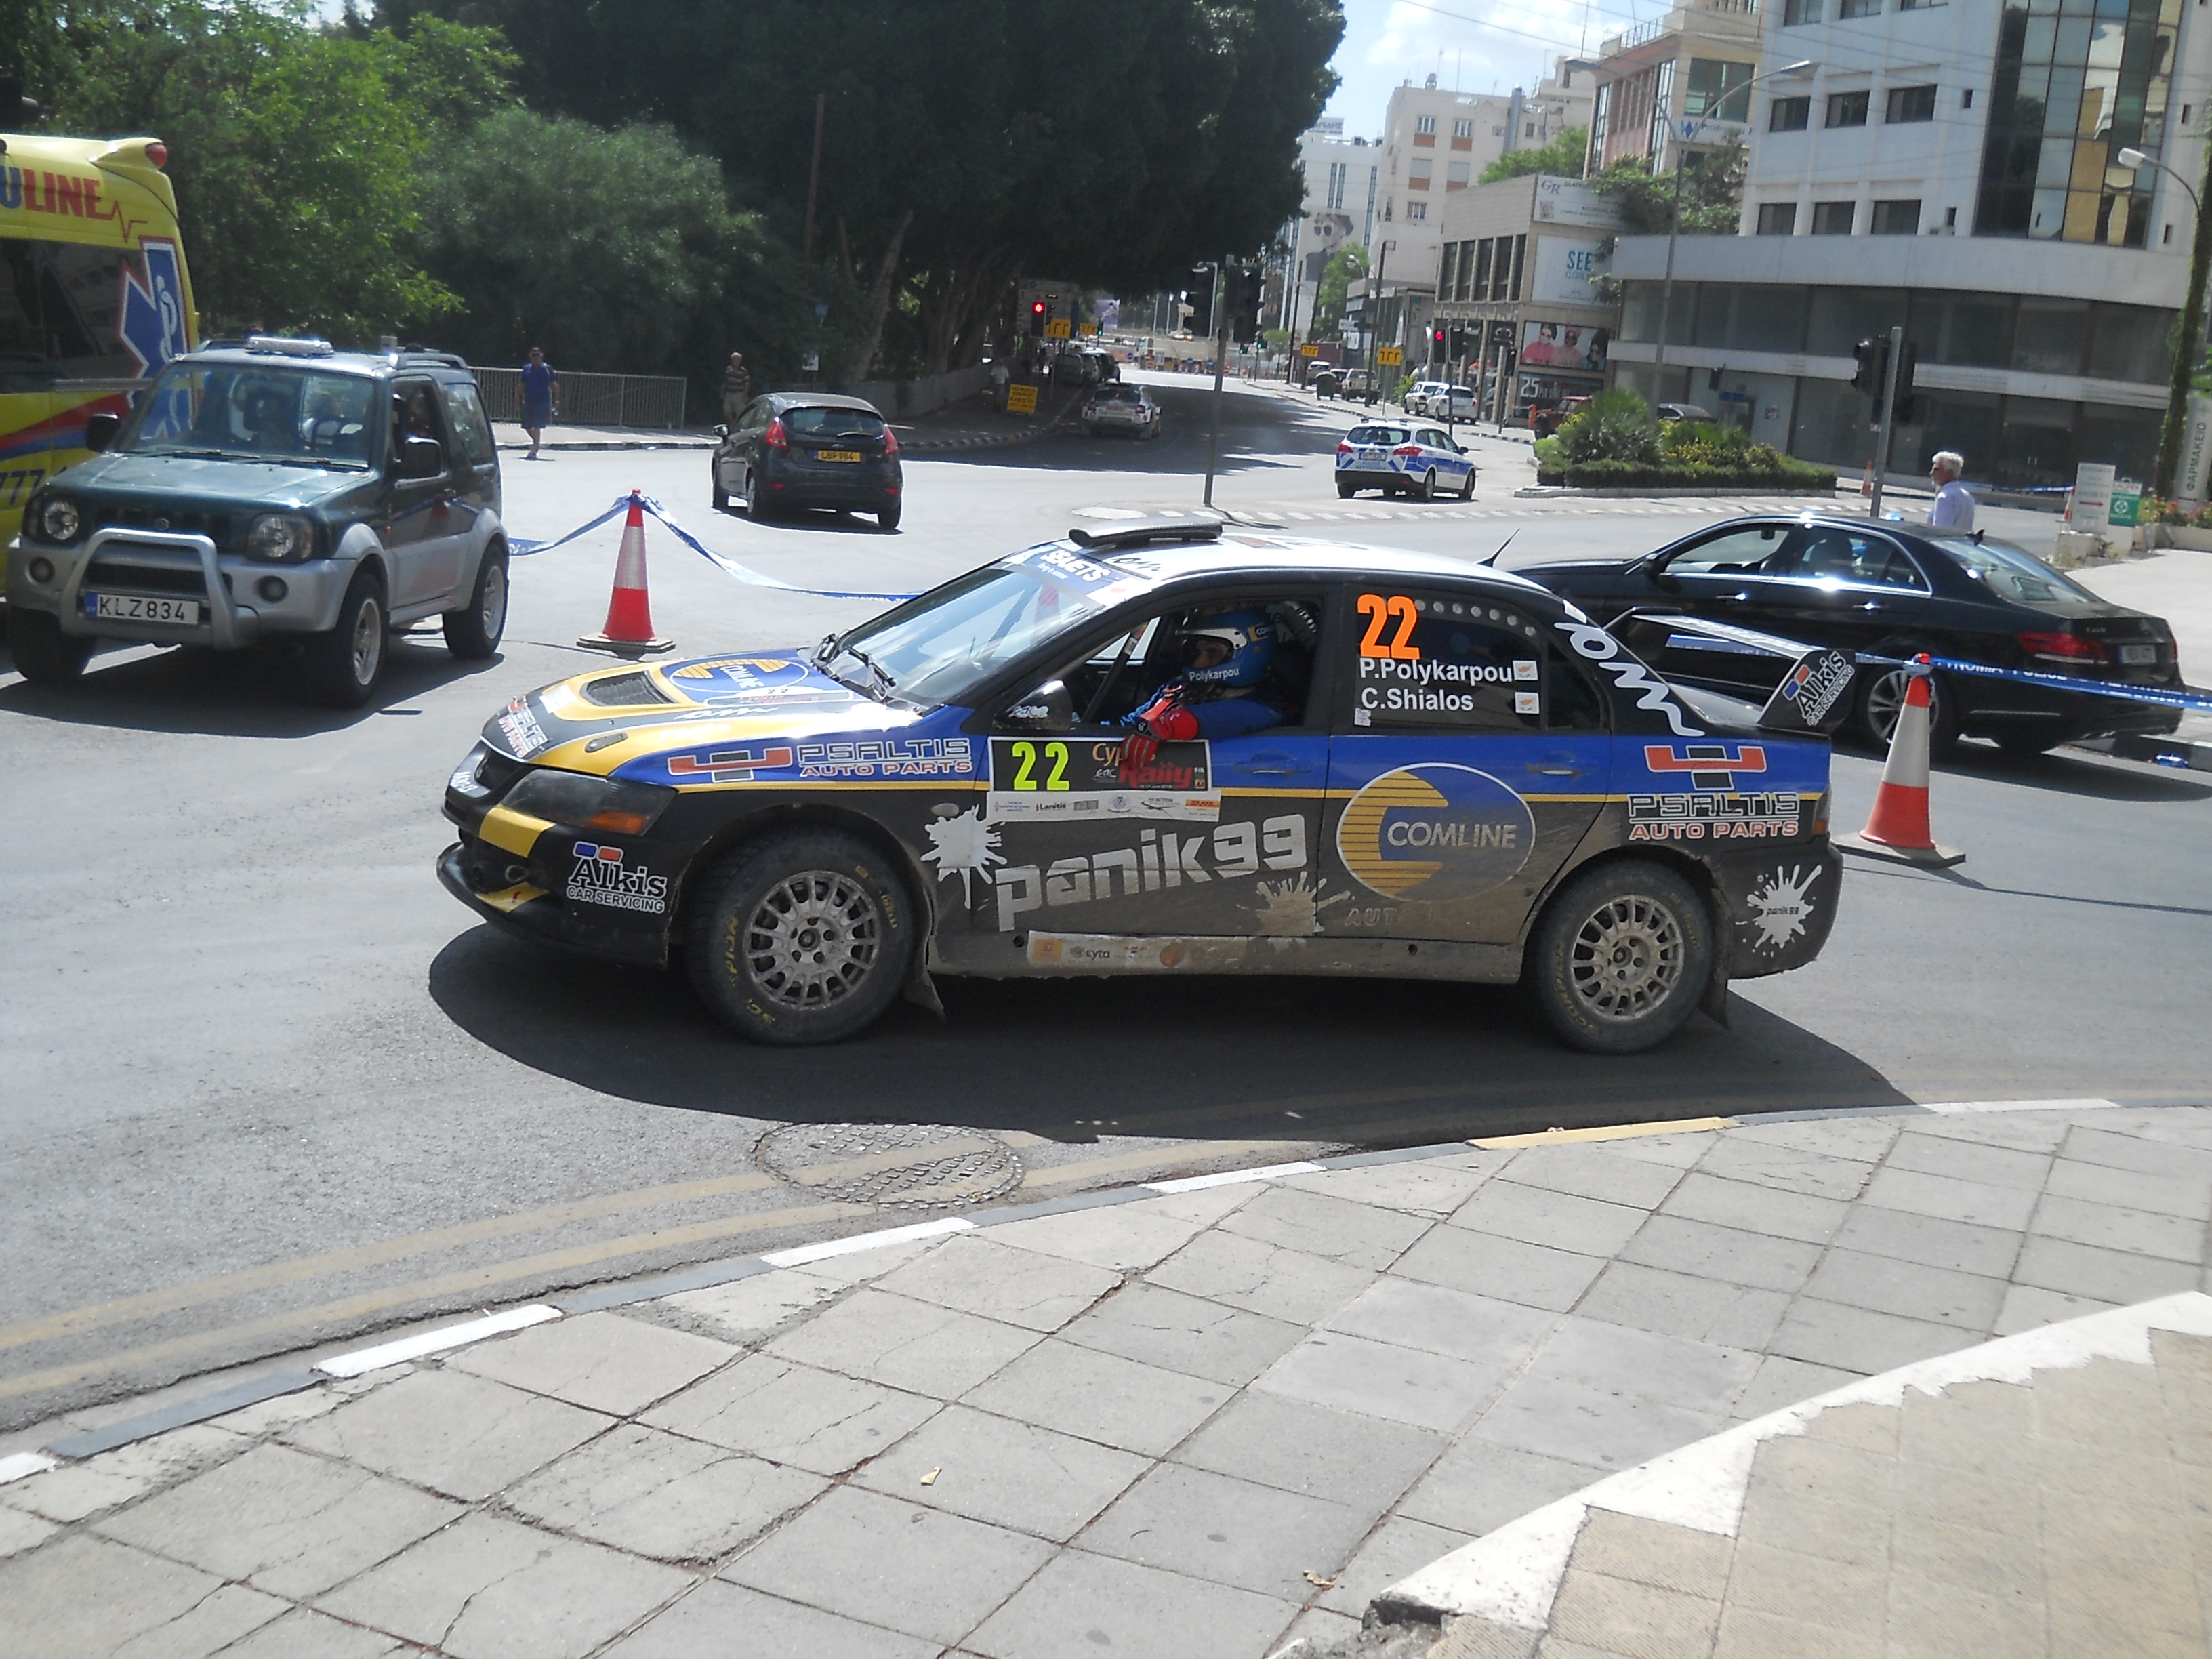 Cyprus Rally 2018 в Никосии! Фото-обзор с мероприятия.: фото 7